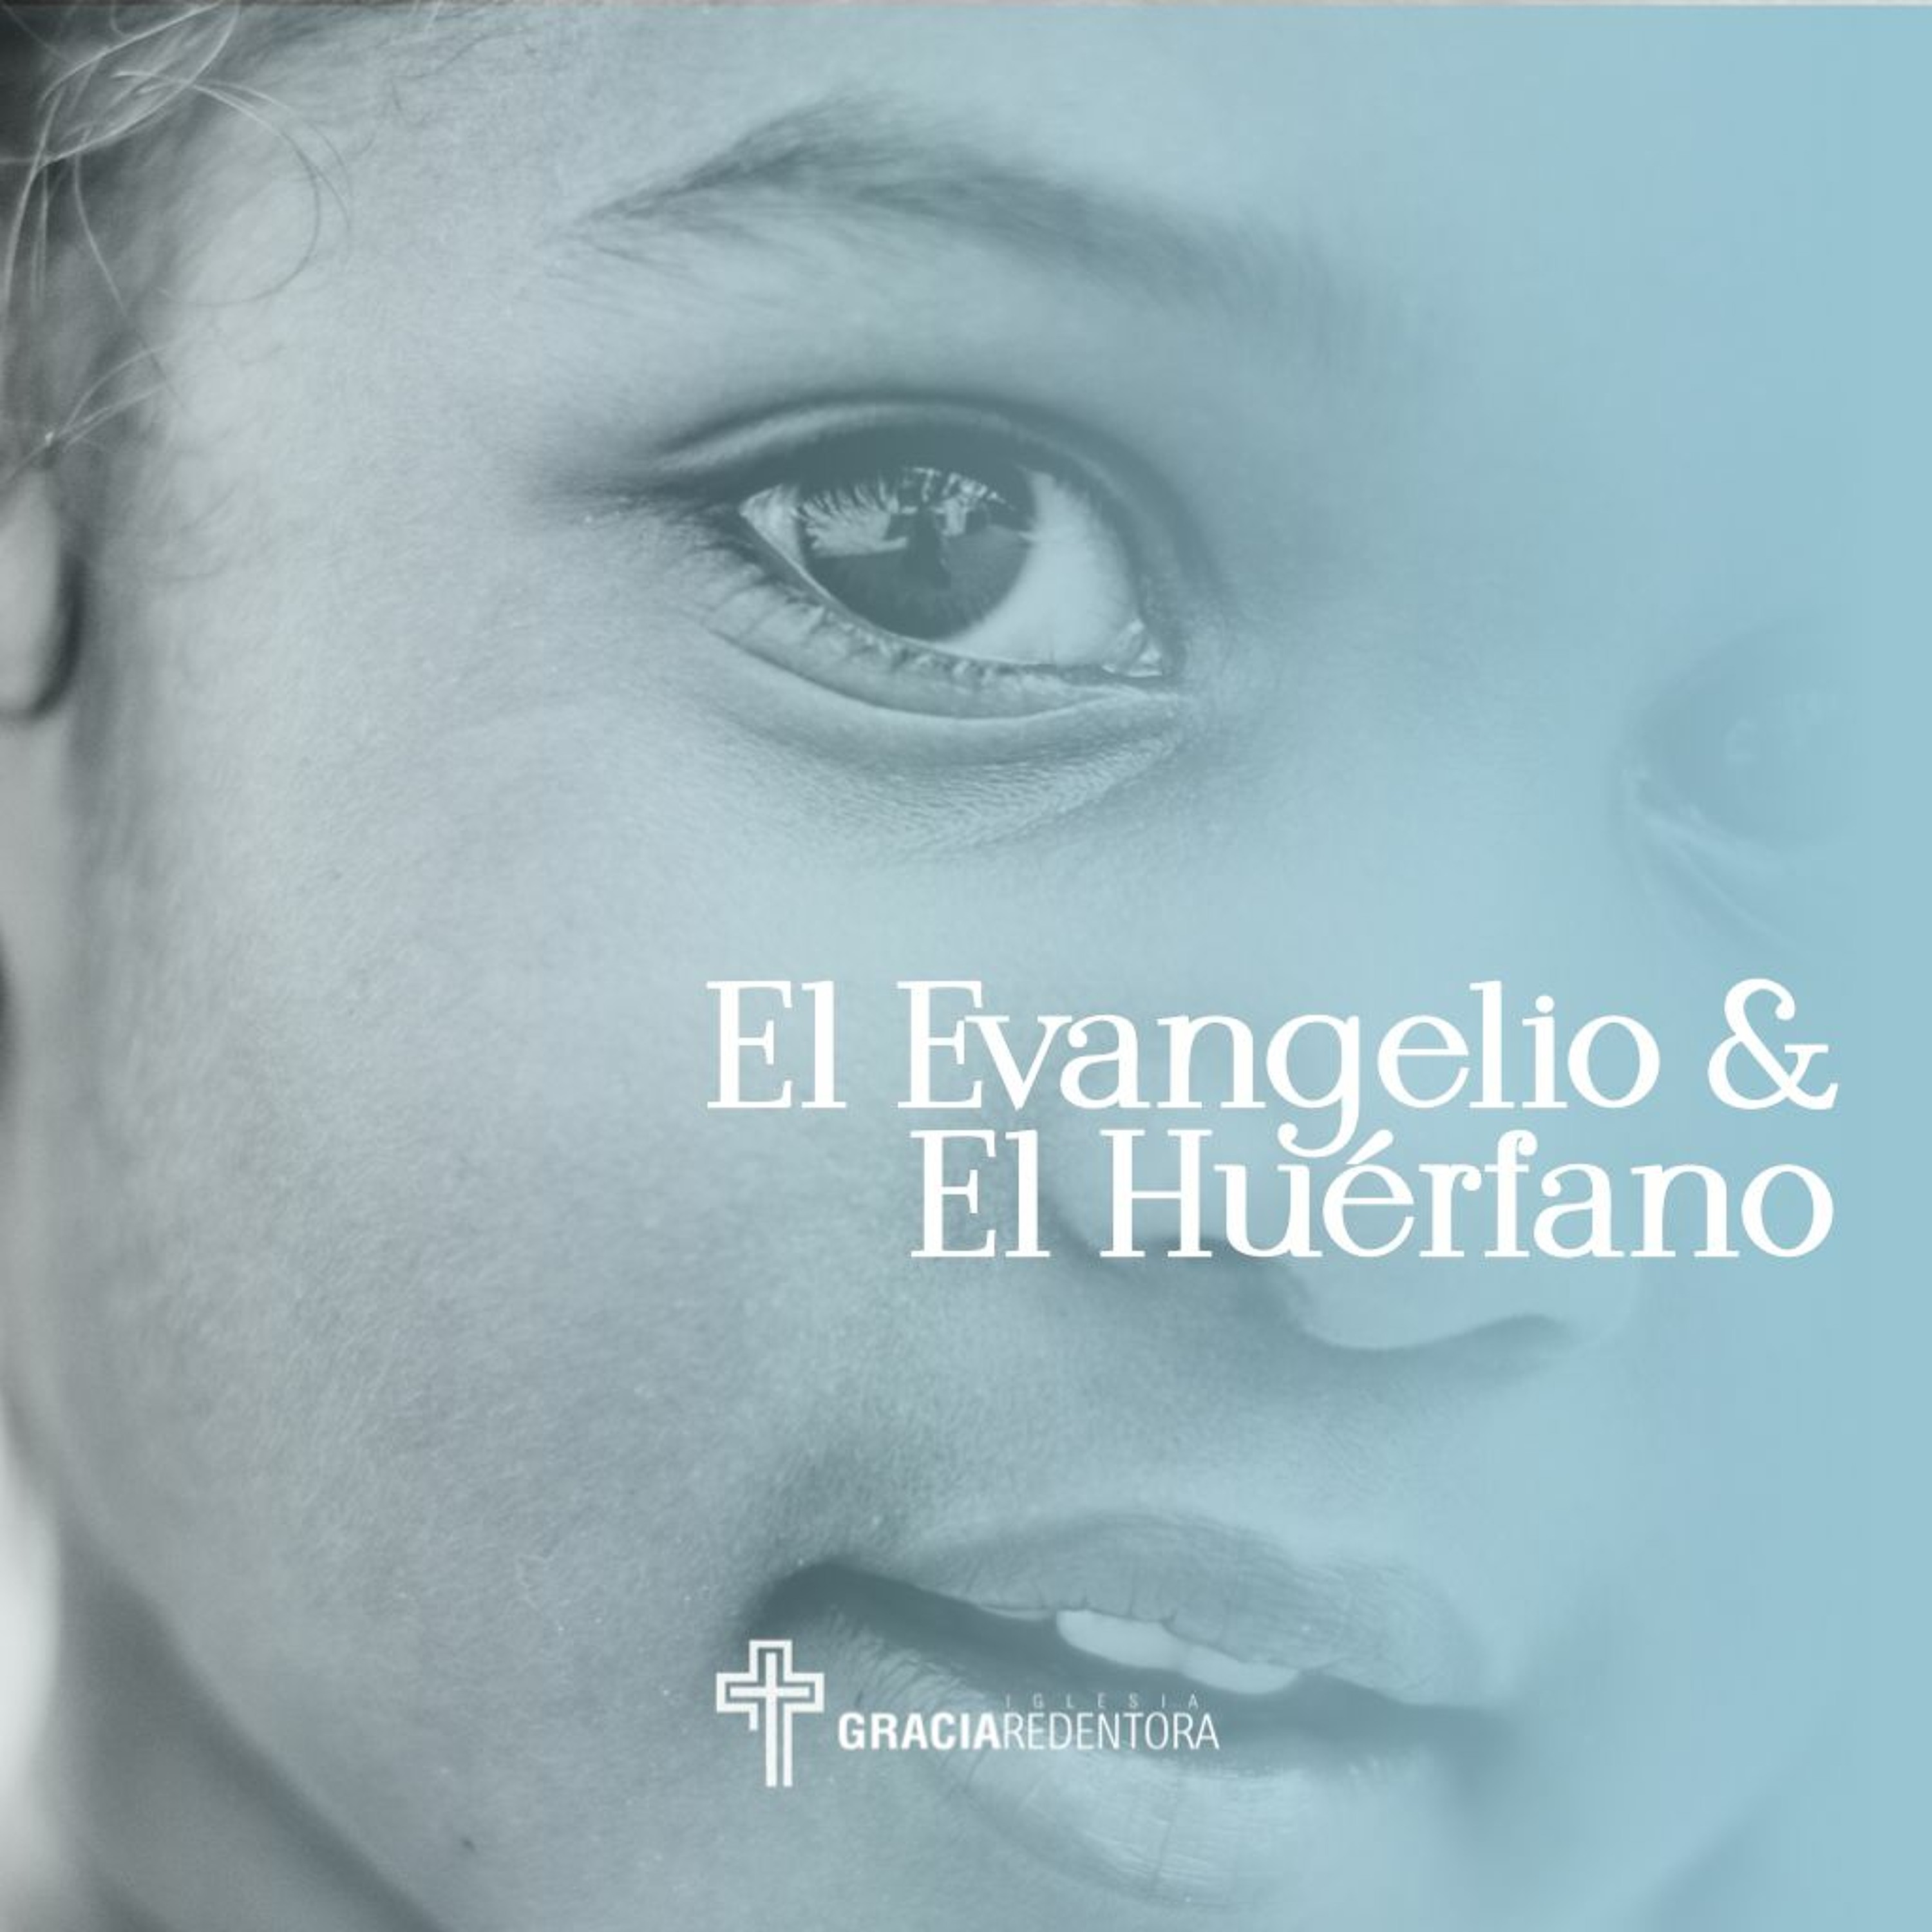 El Evangelio & El Huerfano